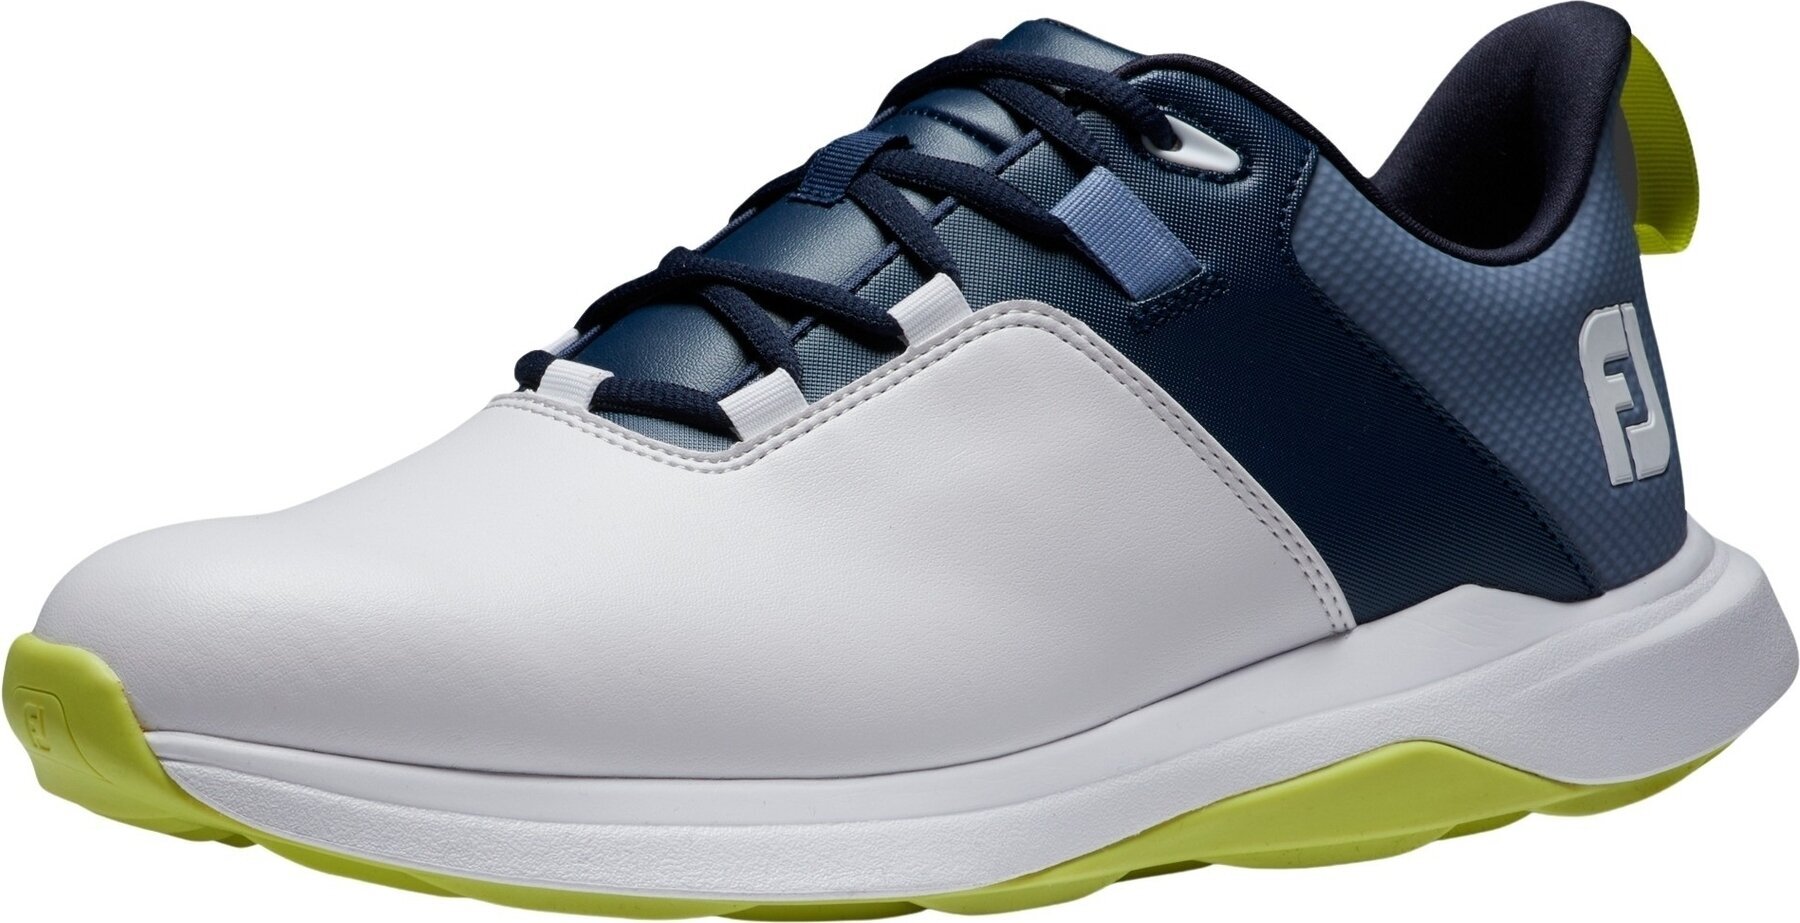 Calçado de golfe para homem Footjoy ProLite Mens Golf Shoes White/Navy/Lime 44